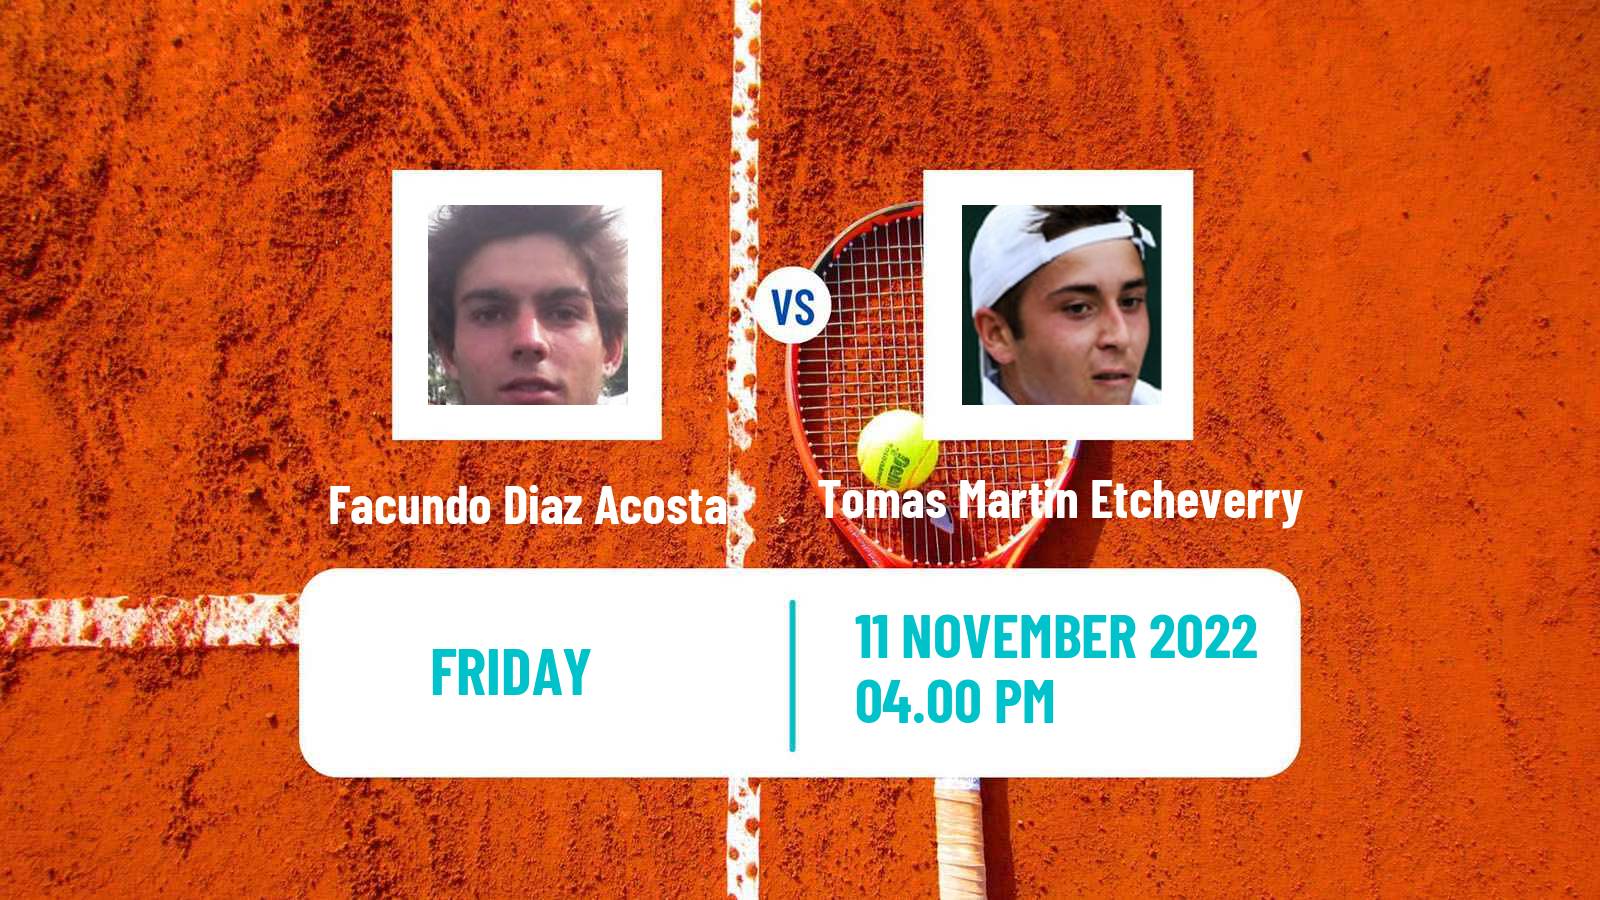 Tennis ATP Challenger Facundo Diaz Acosta - Tomas Martin Etcheverry